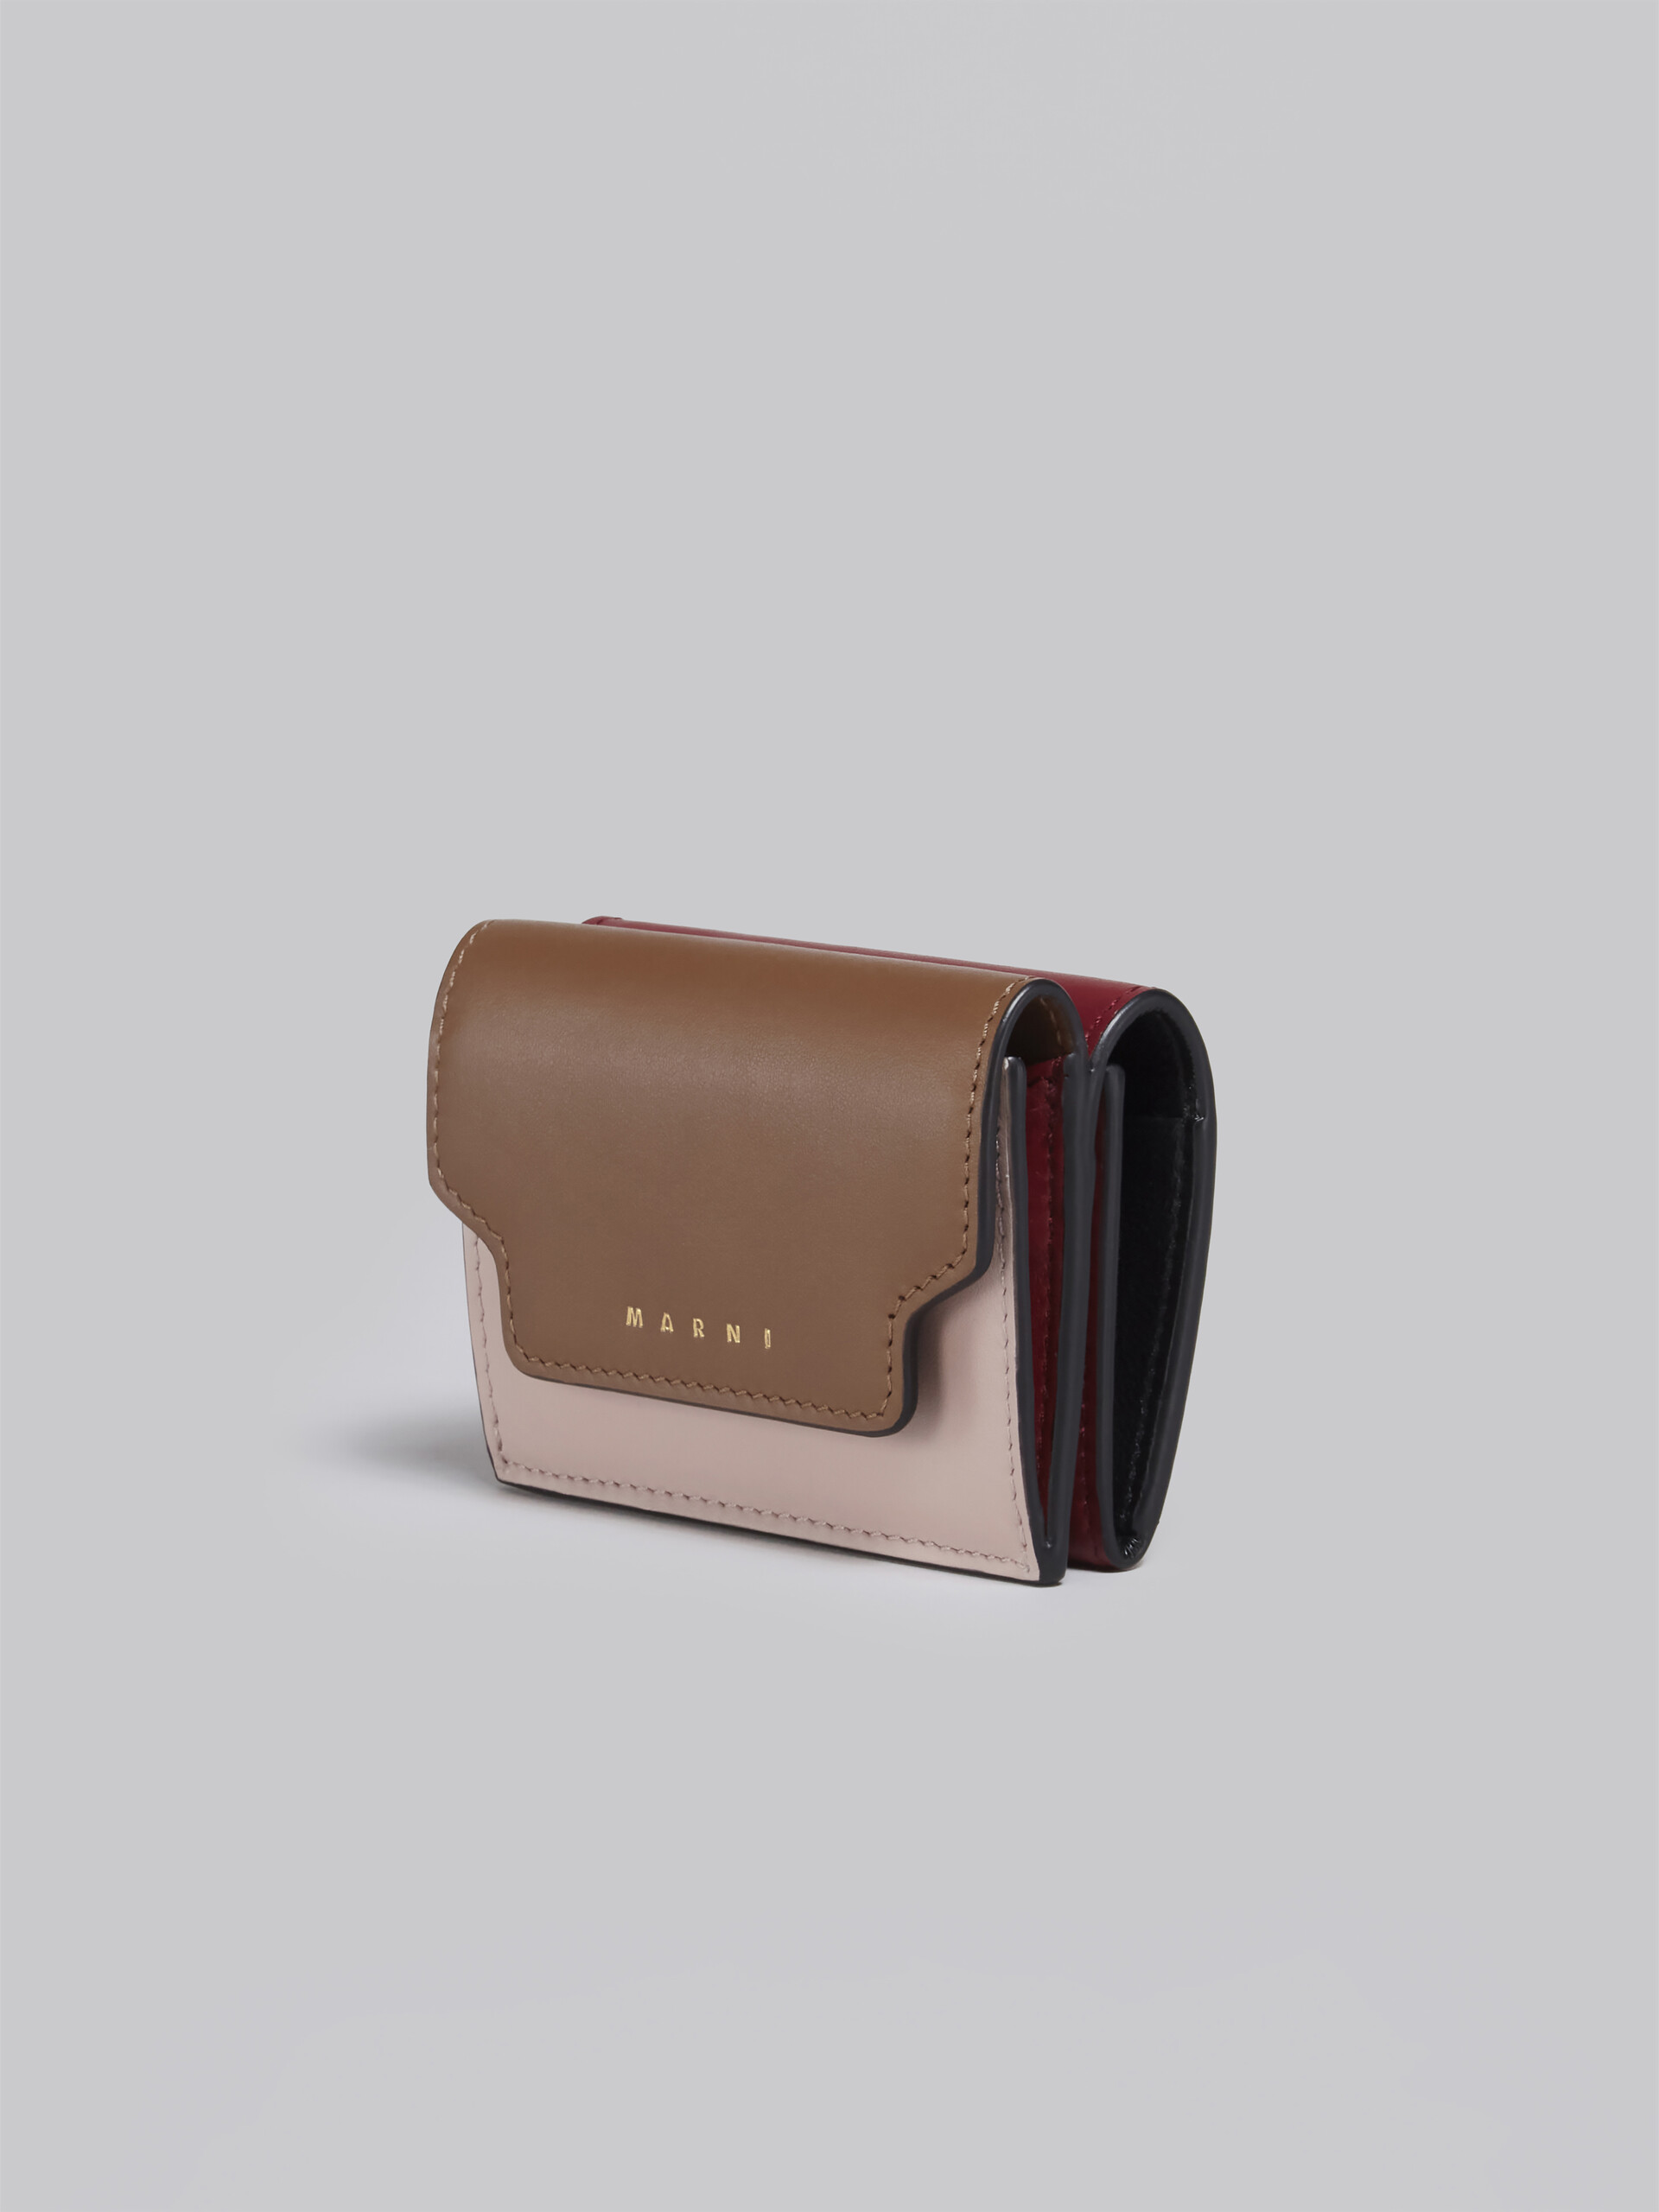 Portafoglio tri-fold in pelle marrone rosa e bordeaux - Portafogli - Image 4